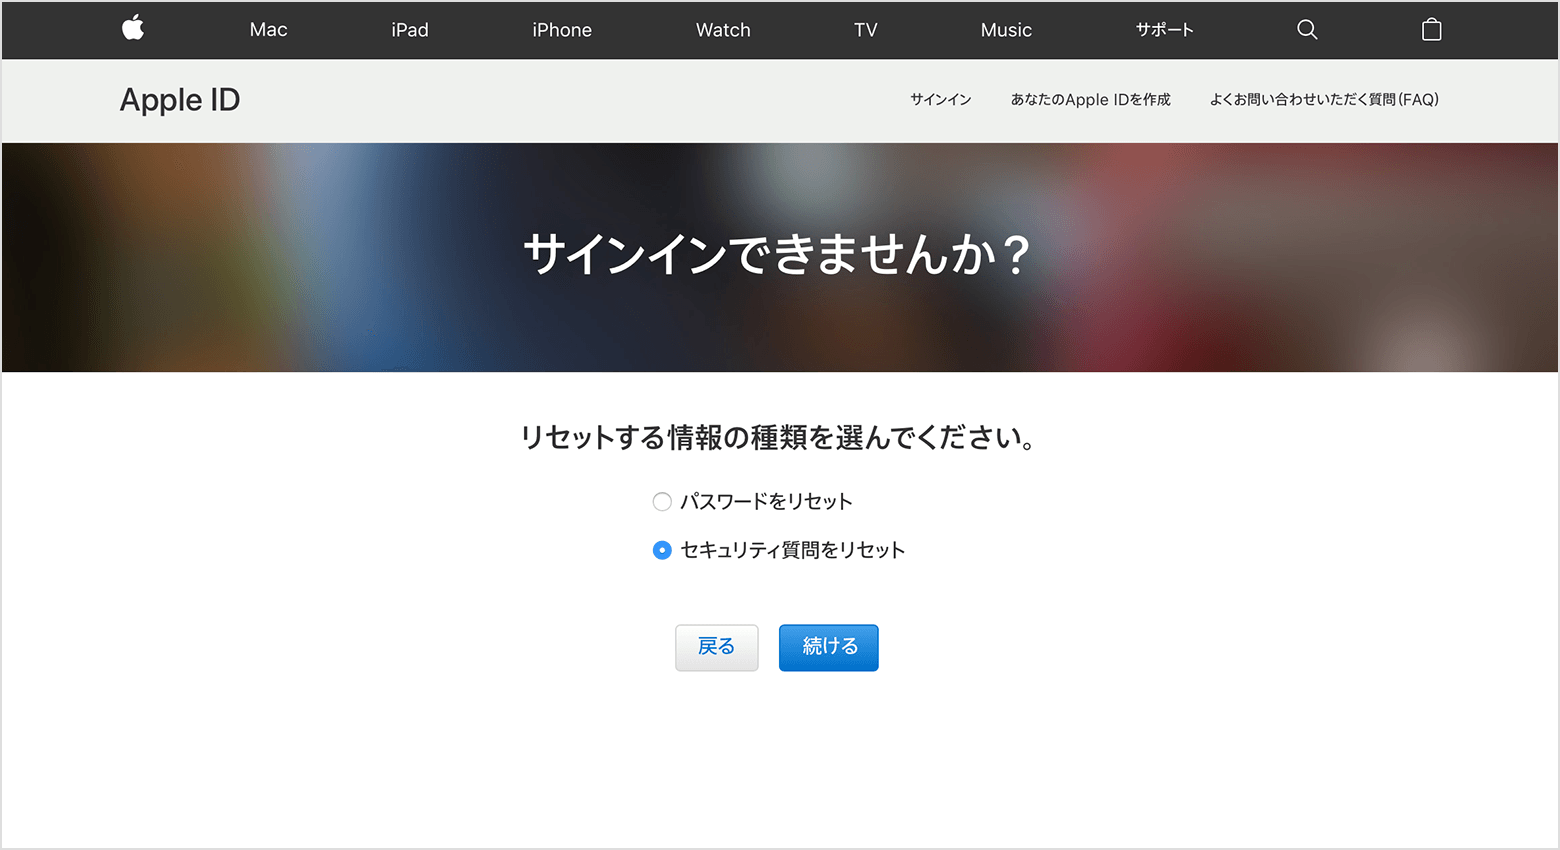 Apple Id のセキュリティ質問の答えを忘れた場合 Apple サポート 日本